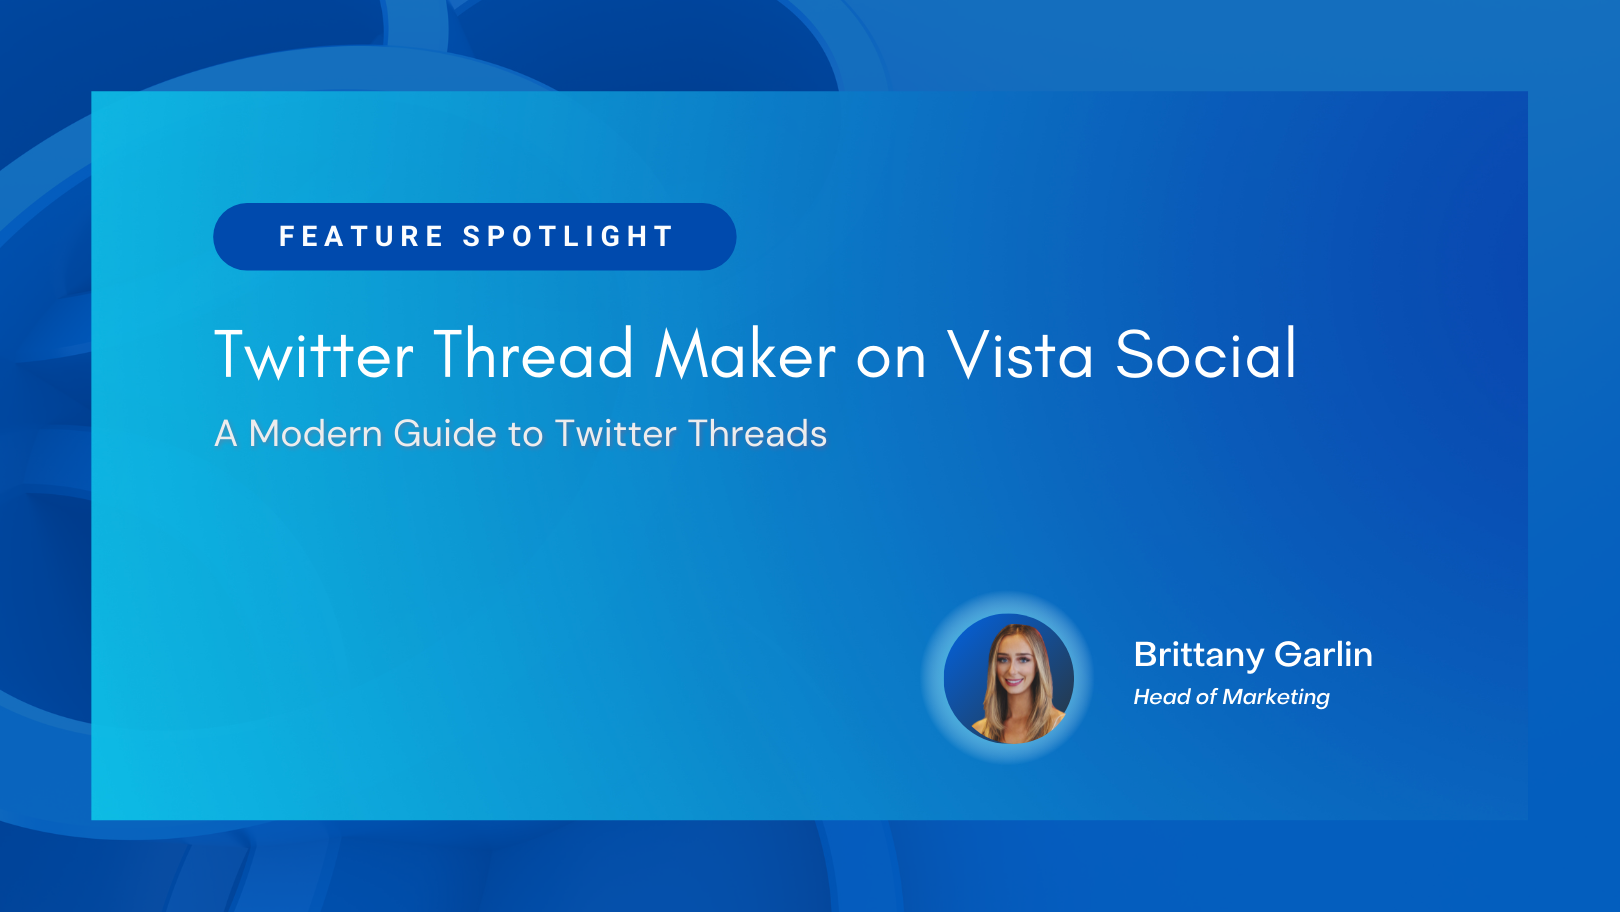 Twitter Thread Maker on Vista Social: A Modern Guide to Twitter Threads